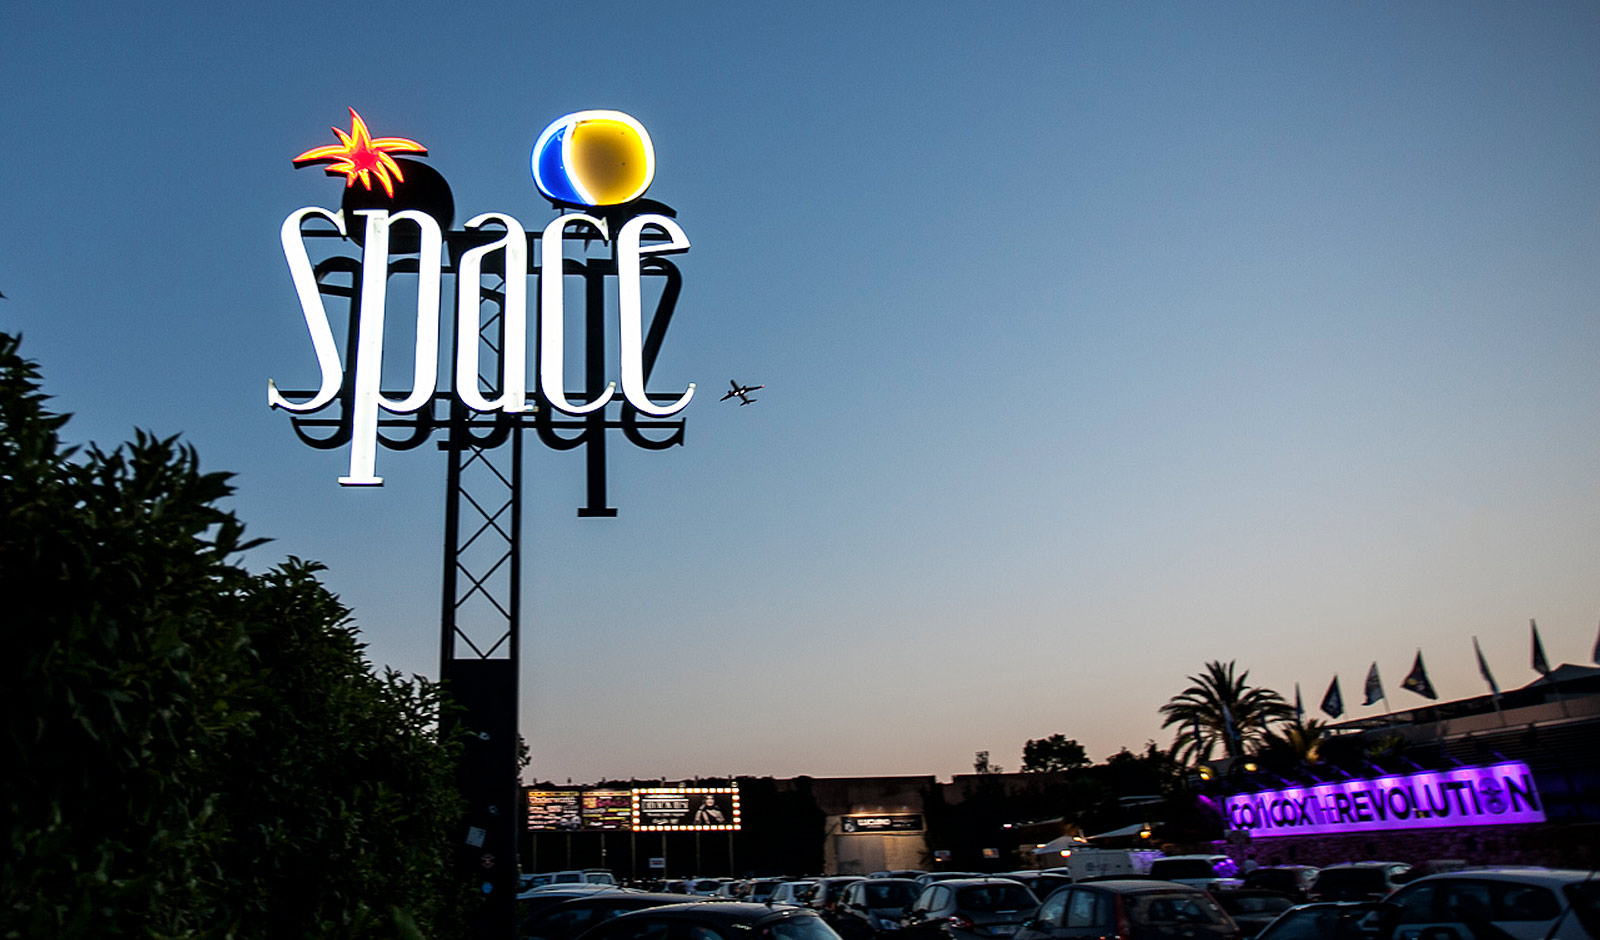 Space Ibiza Announces Move to Riccione, Italy